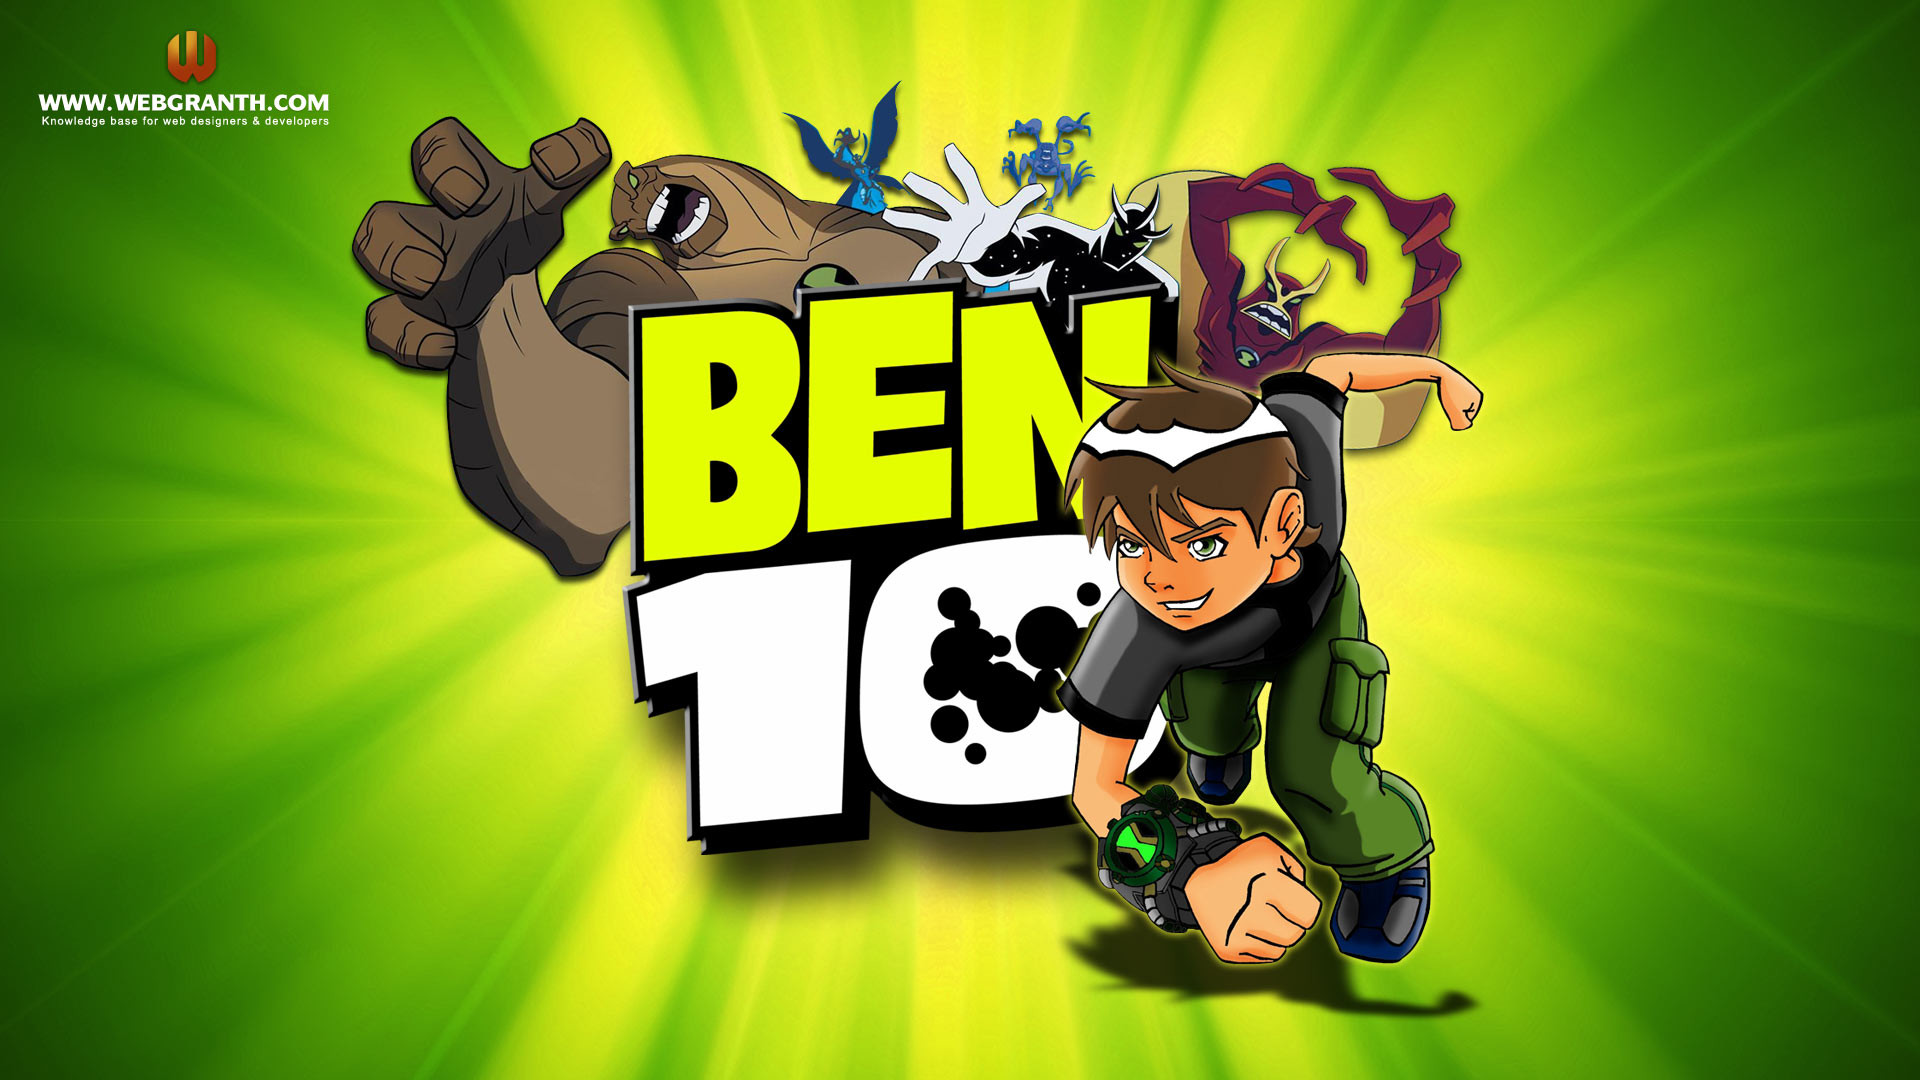 Bet 10 Cartoon Character Wallpaper 
 Data-src - Ben 10 Wallpaper Hd - HD Wallpaper 